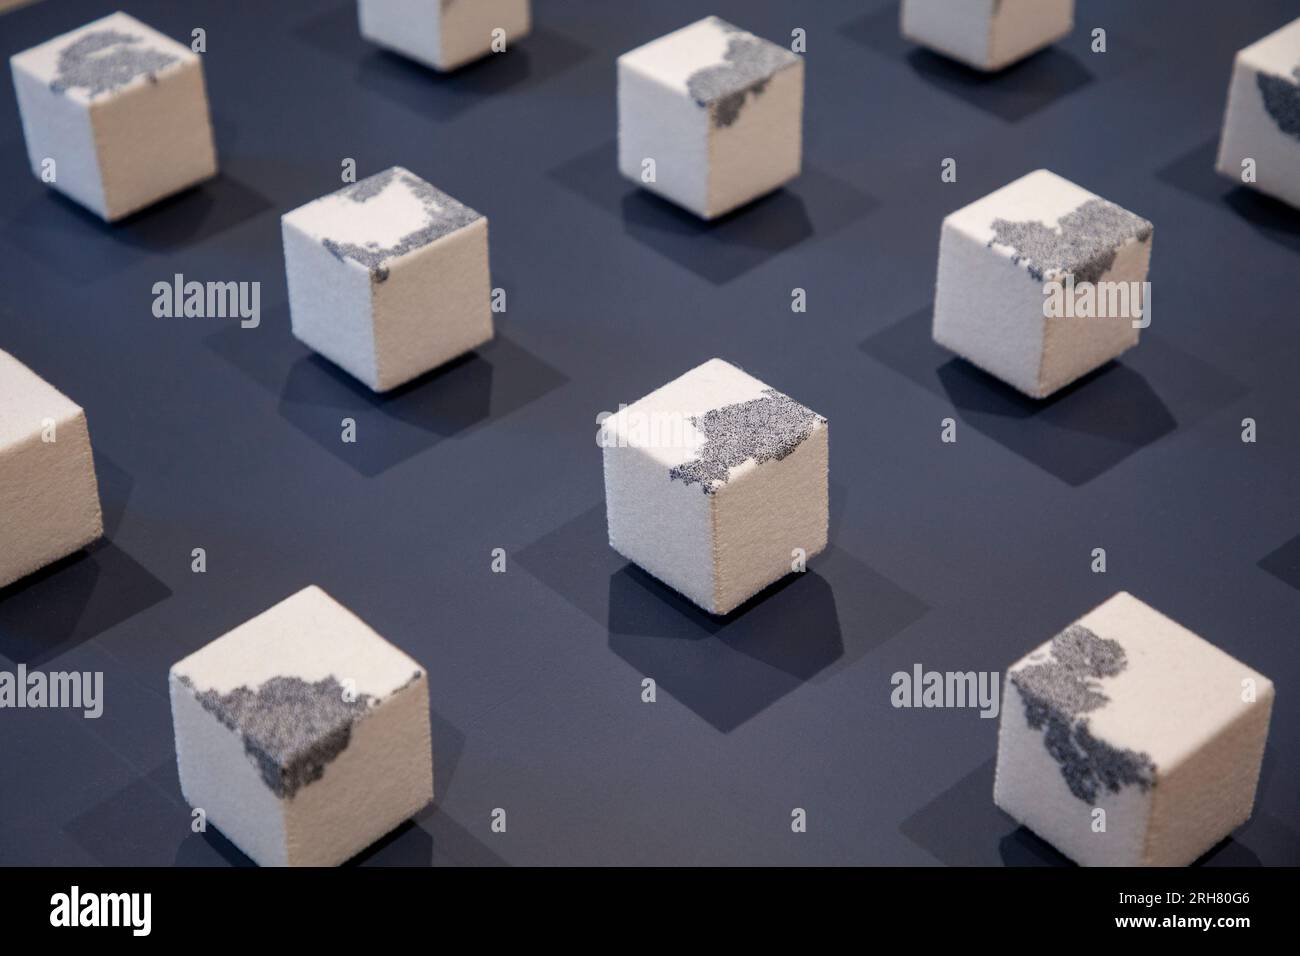 Richard McVetis - variazioni di un cubo cucito (2017). In mostra durante i thread: "Respirare storie nei materiali" ad Arnolfini a Bristol Foto Stock